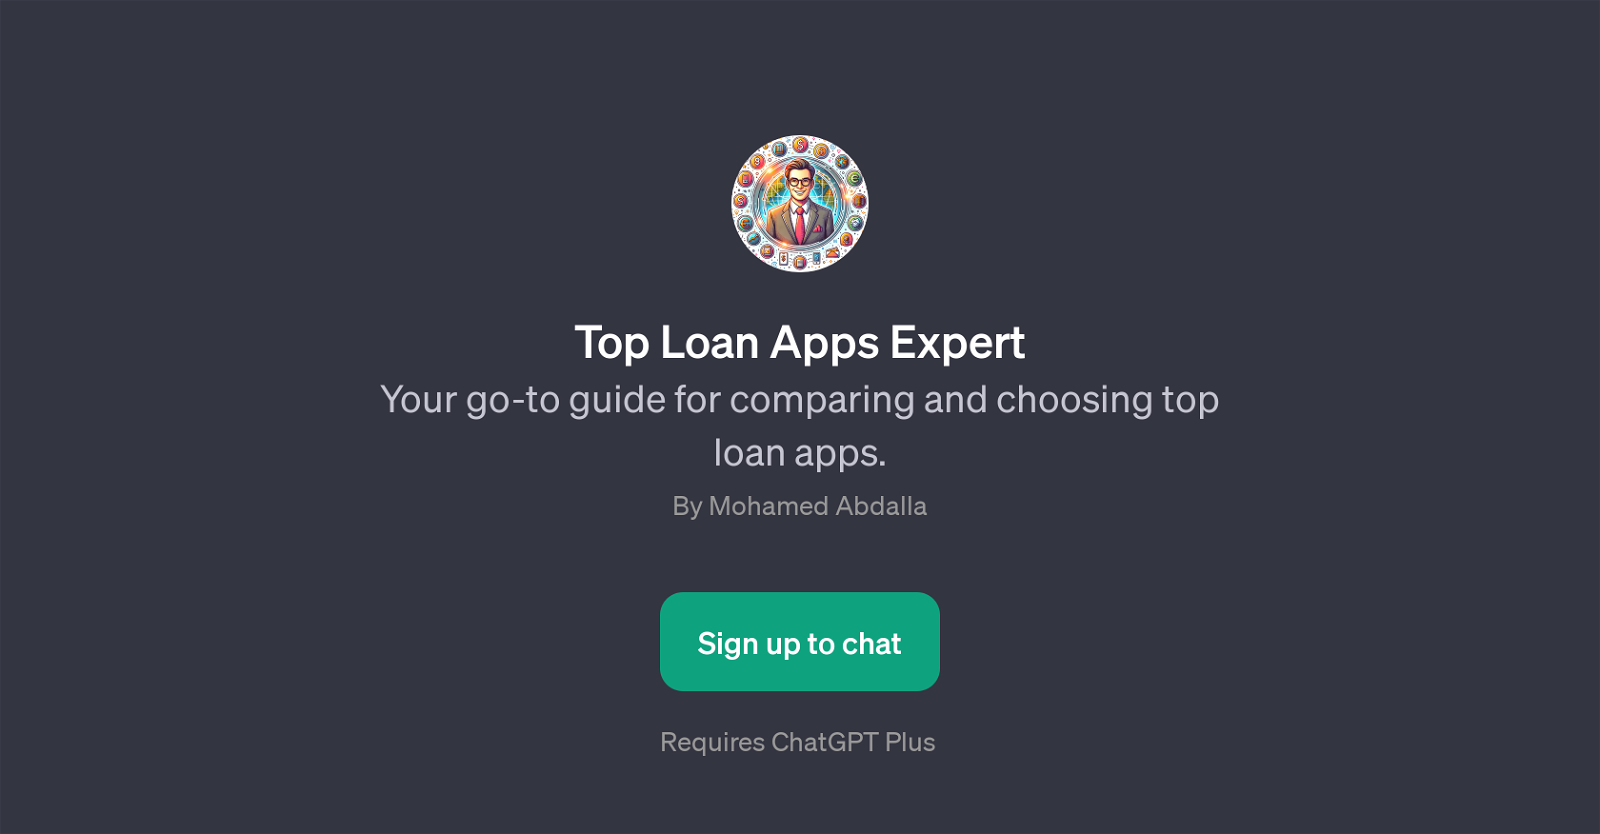 Top Loan Apps Expert website